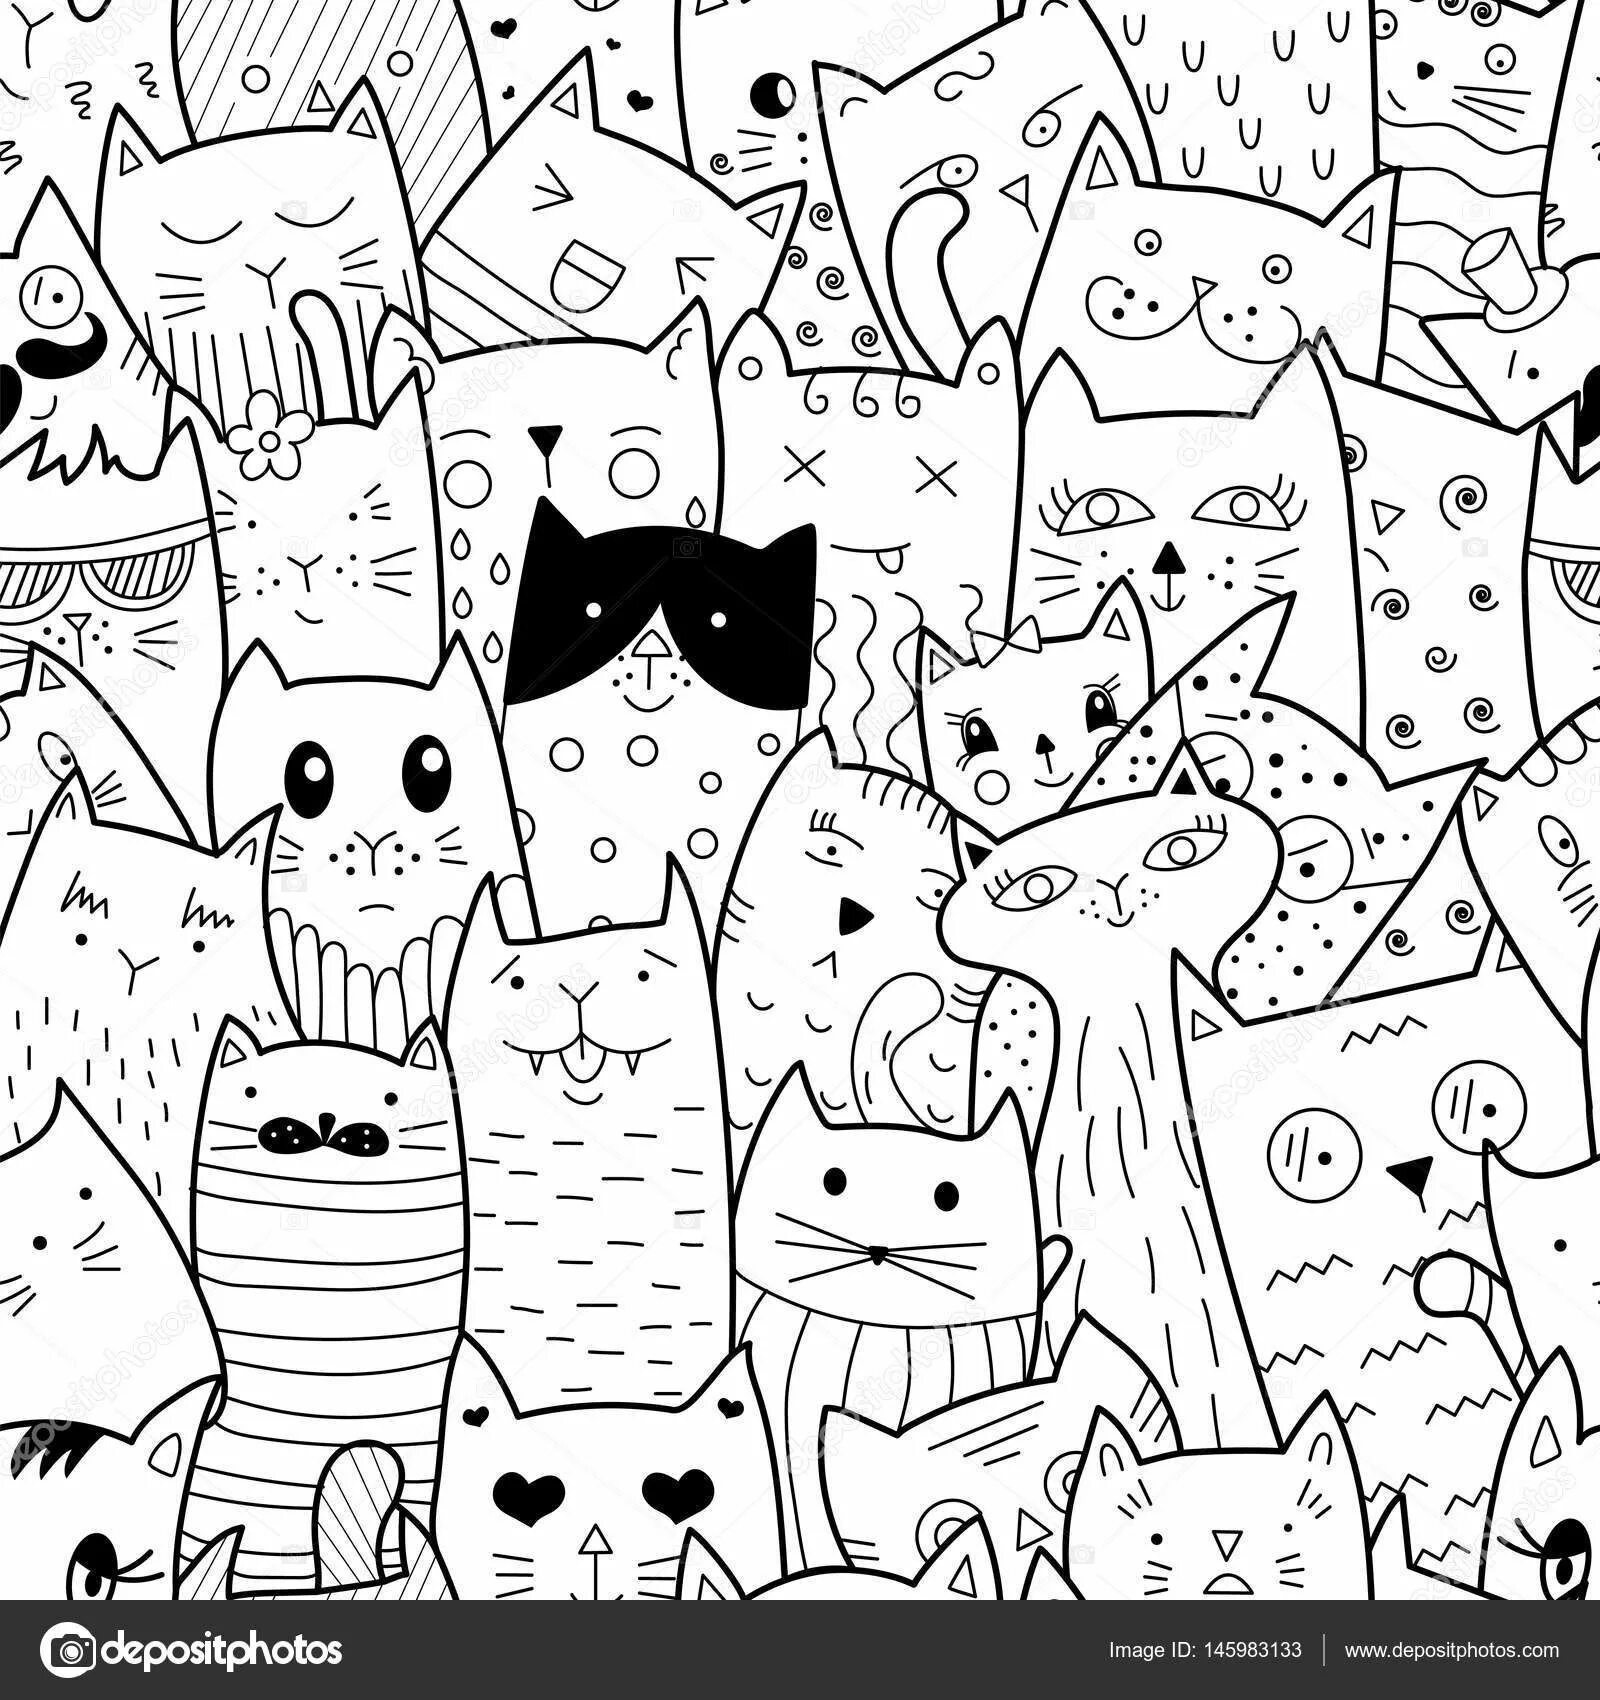 Many cats #3